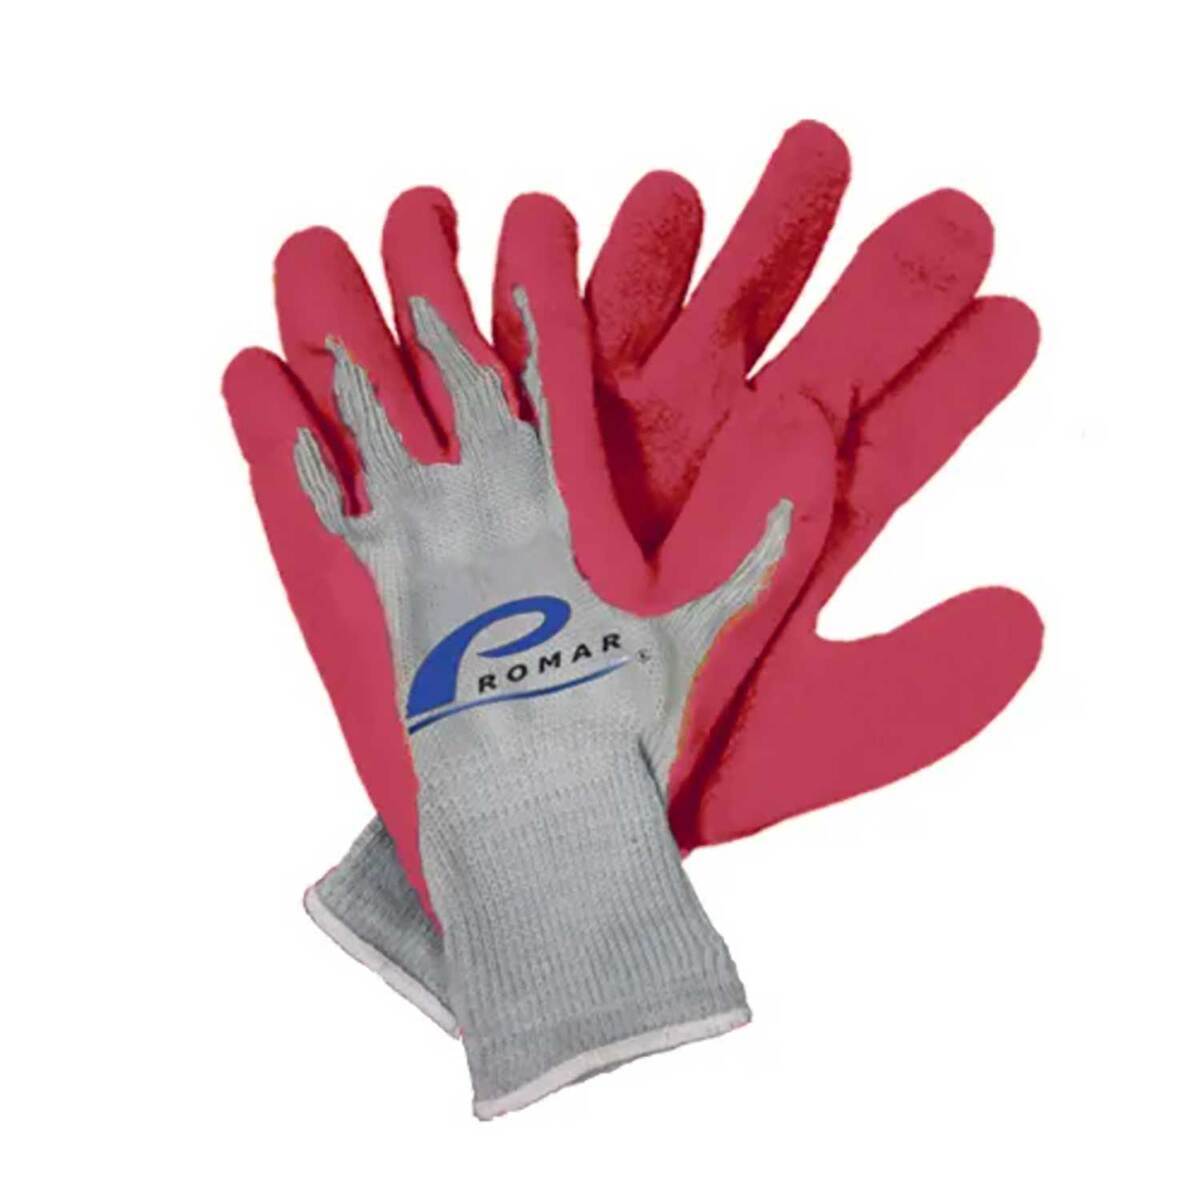 https://www.sportsmans.com/medias/promar-latex-palm-grip-crabbing-gloves-pink-large-1690618-1.jpg?context=bWFzdGVyfGltYWdlc3w1NjE0OXxpbWFnZS9qcGVnfGgwNi9oNDEvMTAzMjA2NzgxMjU1OTgvMTY5MDYxOC0xX2Jhc2UtY29udmVyc2lvbkZvcm1hdF8xMjAwLWNvbnZlcnNpb25Gb3JtYXR8MzkzODJiNzJkMWIzNWJjYmIxZTY2NDg0ZDgzZmY4NGZjMGNiNDY2ODVkMTFjYTQxYjQzODc5MjdhMTk0OTBhNw